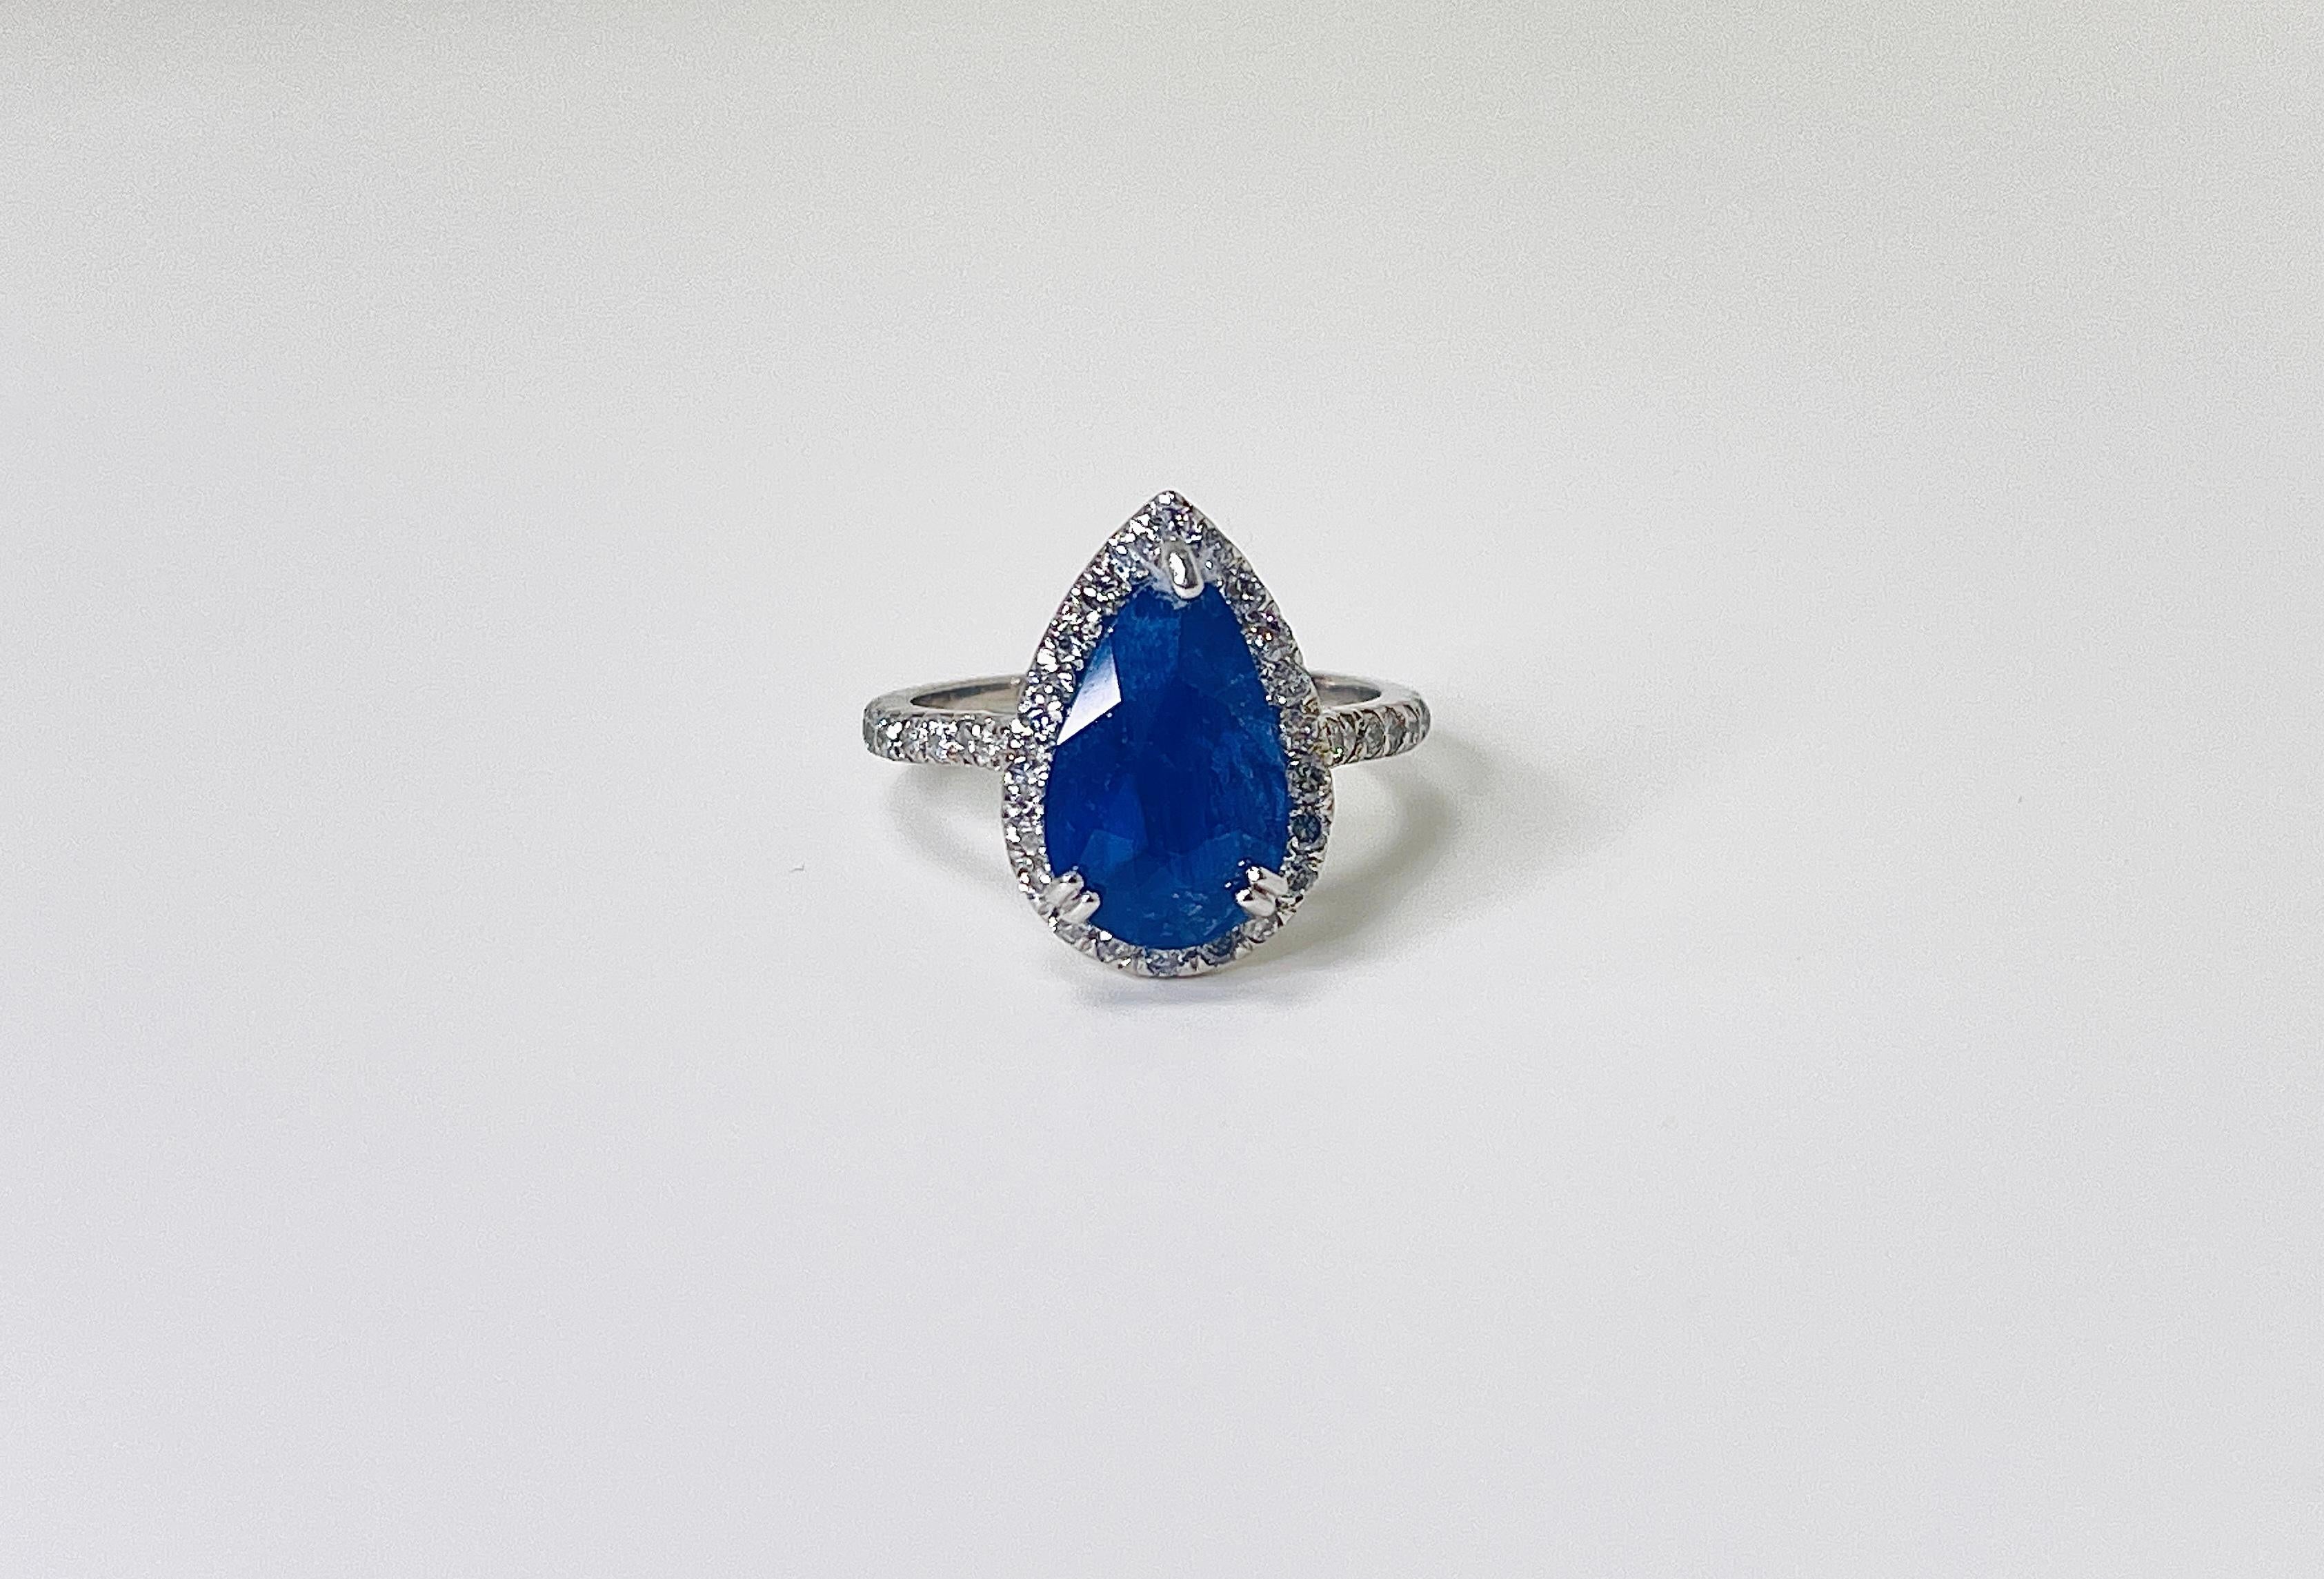 1.29 Carat Intense Blue Pear Shape Cut Natural Sapphire Diamond 14K White Gold Ring

1.29 Carats Nature Heat Sapphire Center Stone
0,70 carats 29 pièces Diamants
Moyenne G-I, 3.57 grammes, taille 6

*Expédition gratuite à l'intérieur des États-Unis
